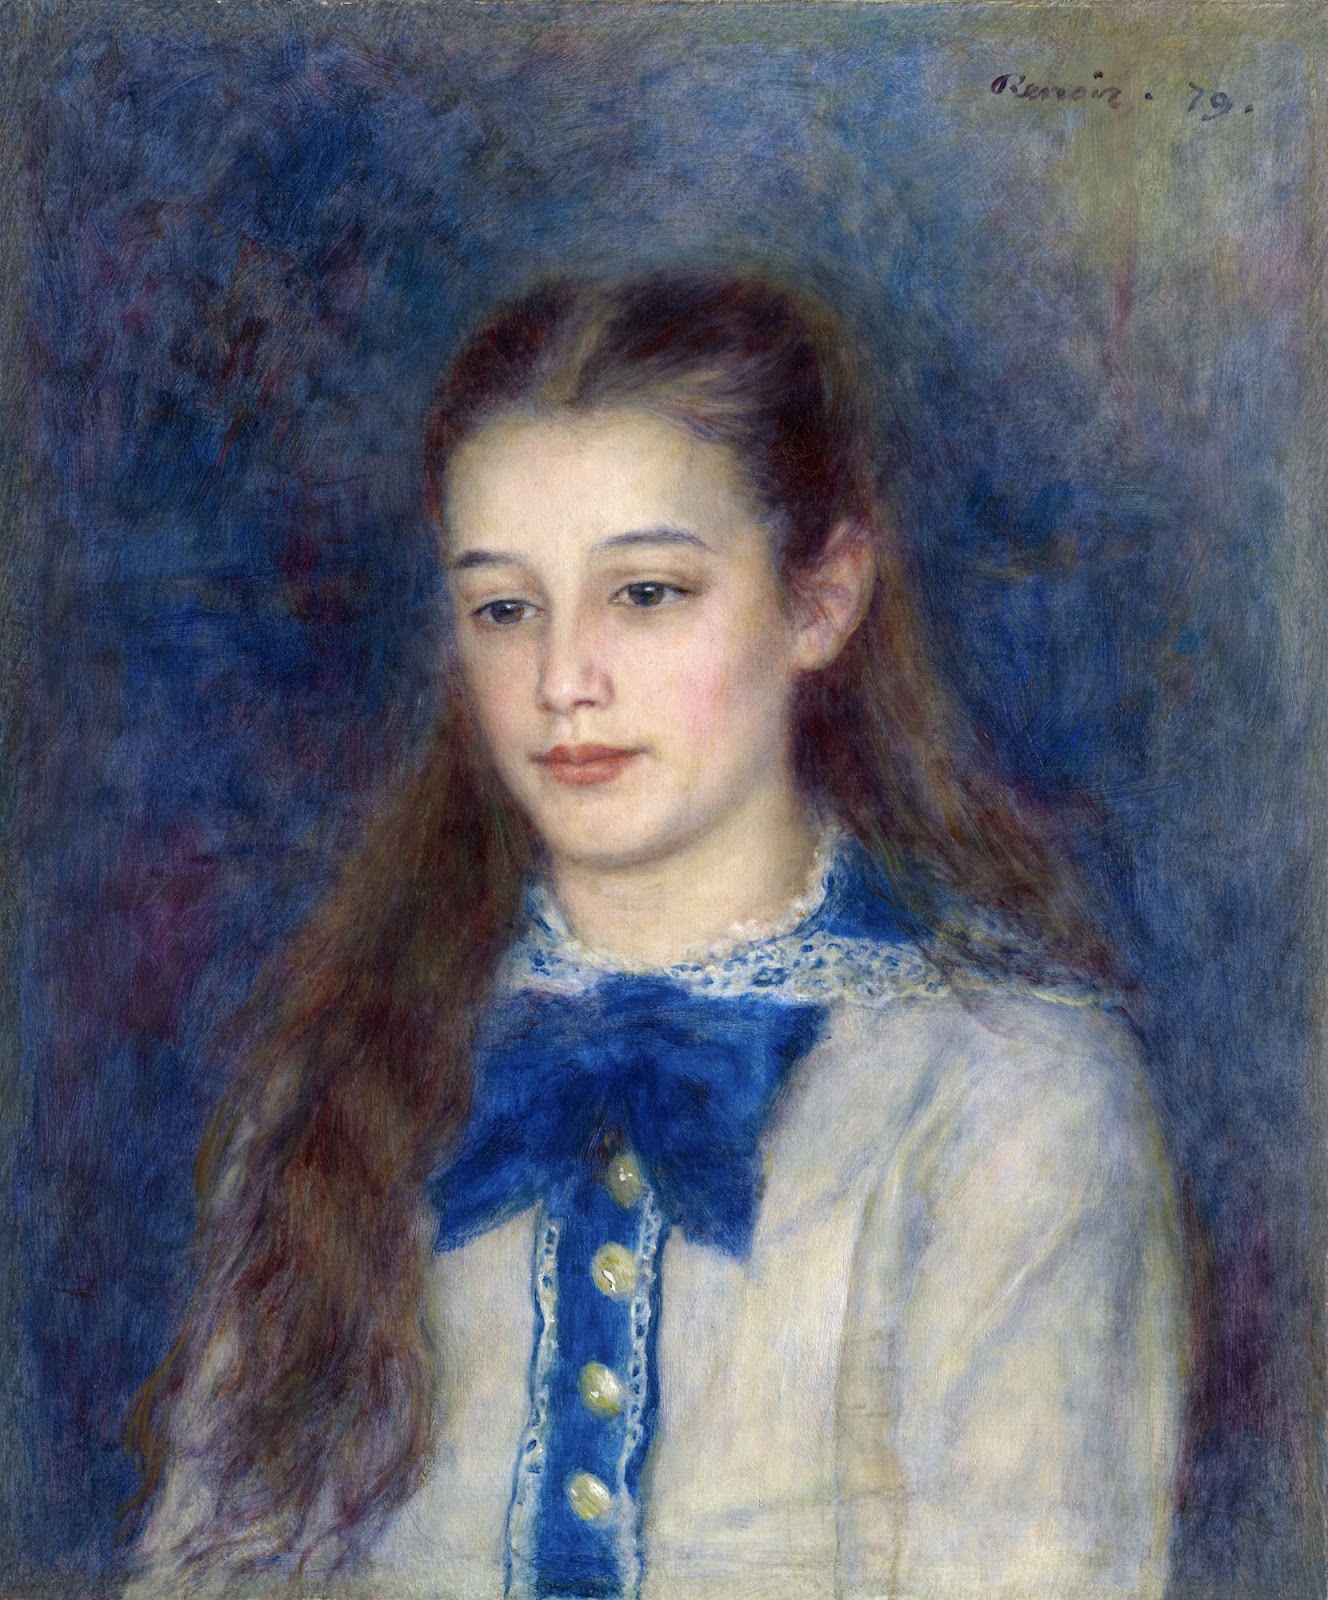 Pierre+Auguste+Renoir-1841-1-19 (879).jpg